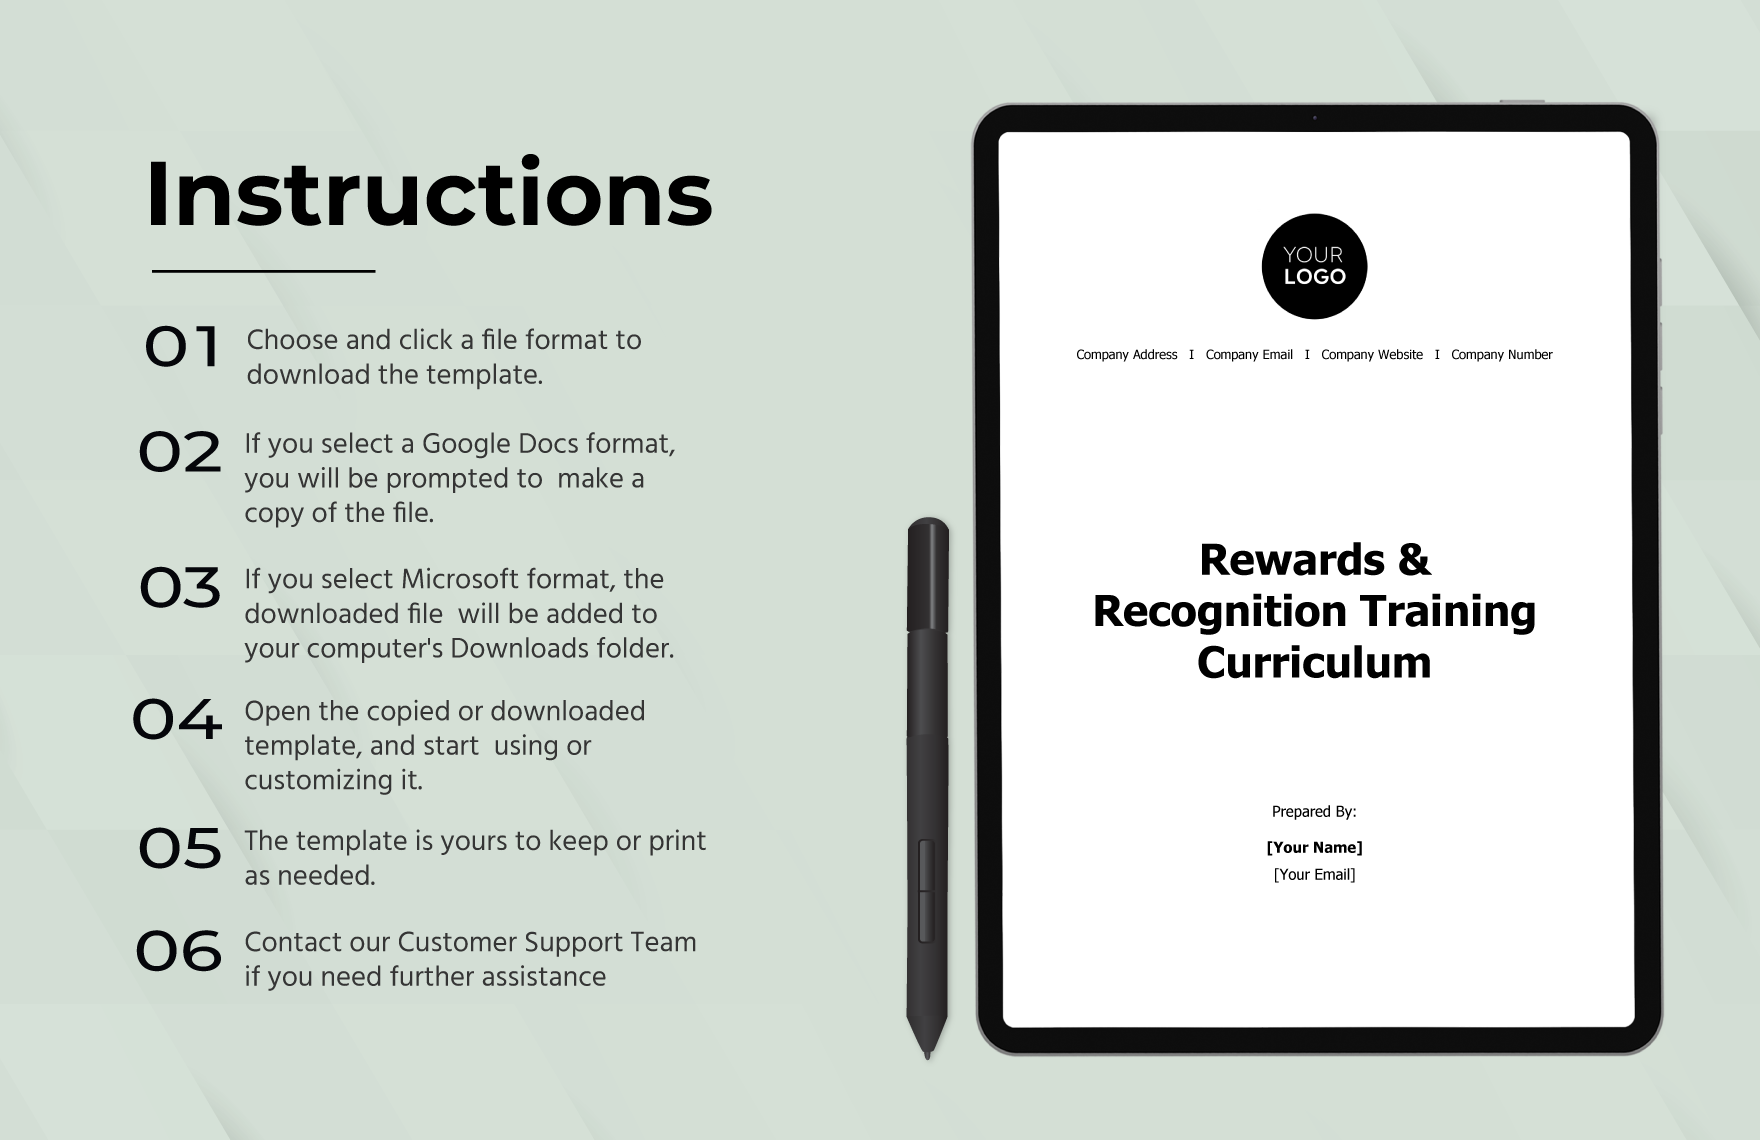 Rewards & Recognition Training Curriculum HR Template